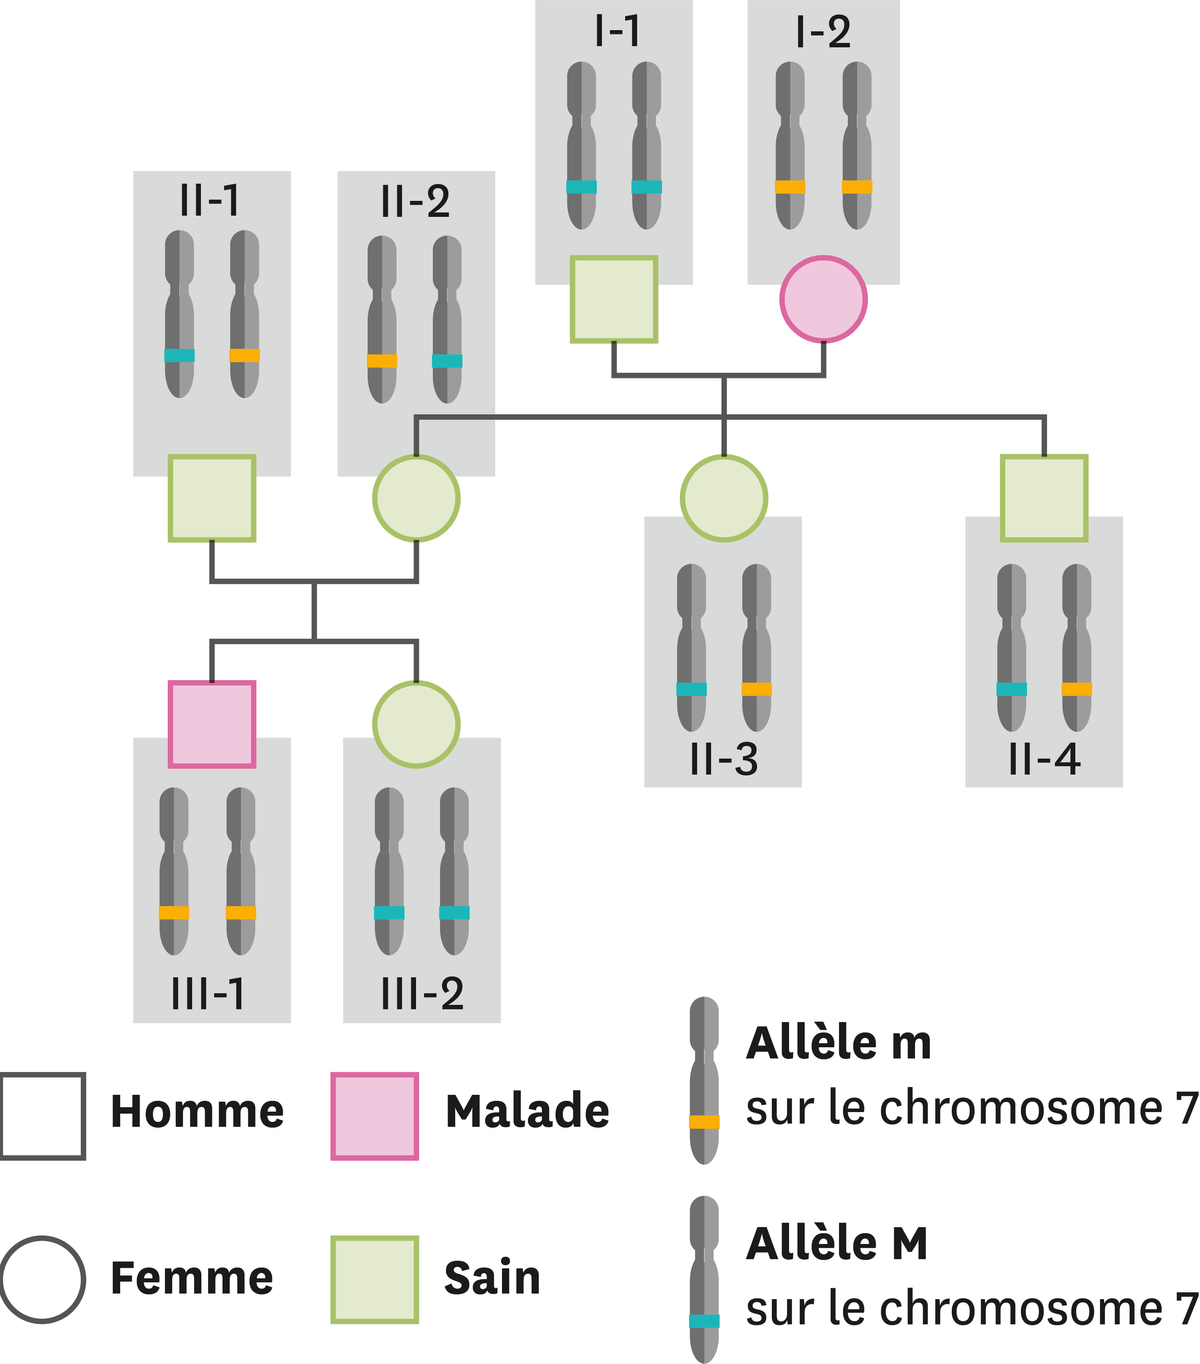 Les allèles présents et les caractères correspondants dans une famille dont certains membres ont la mucoviscidose.